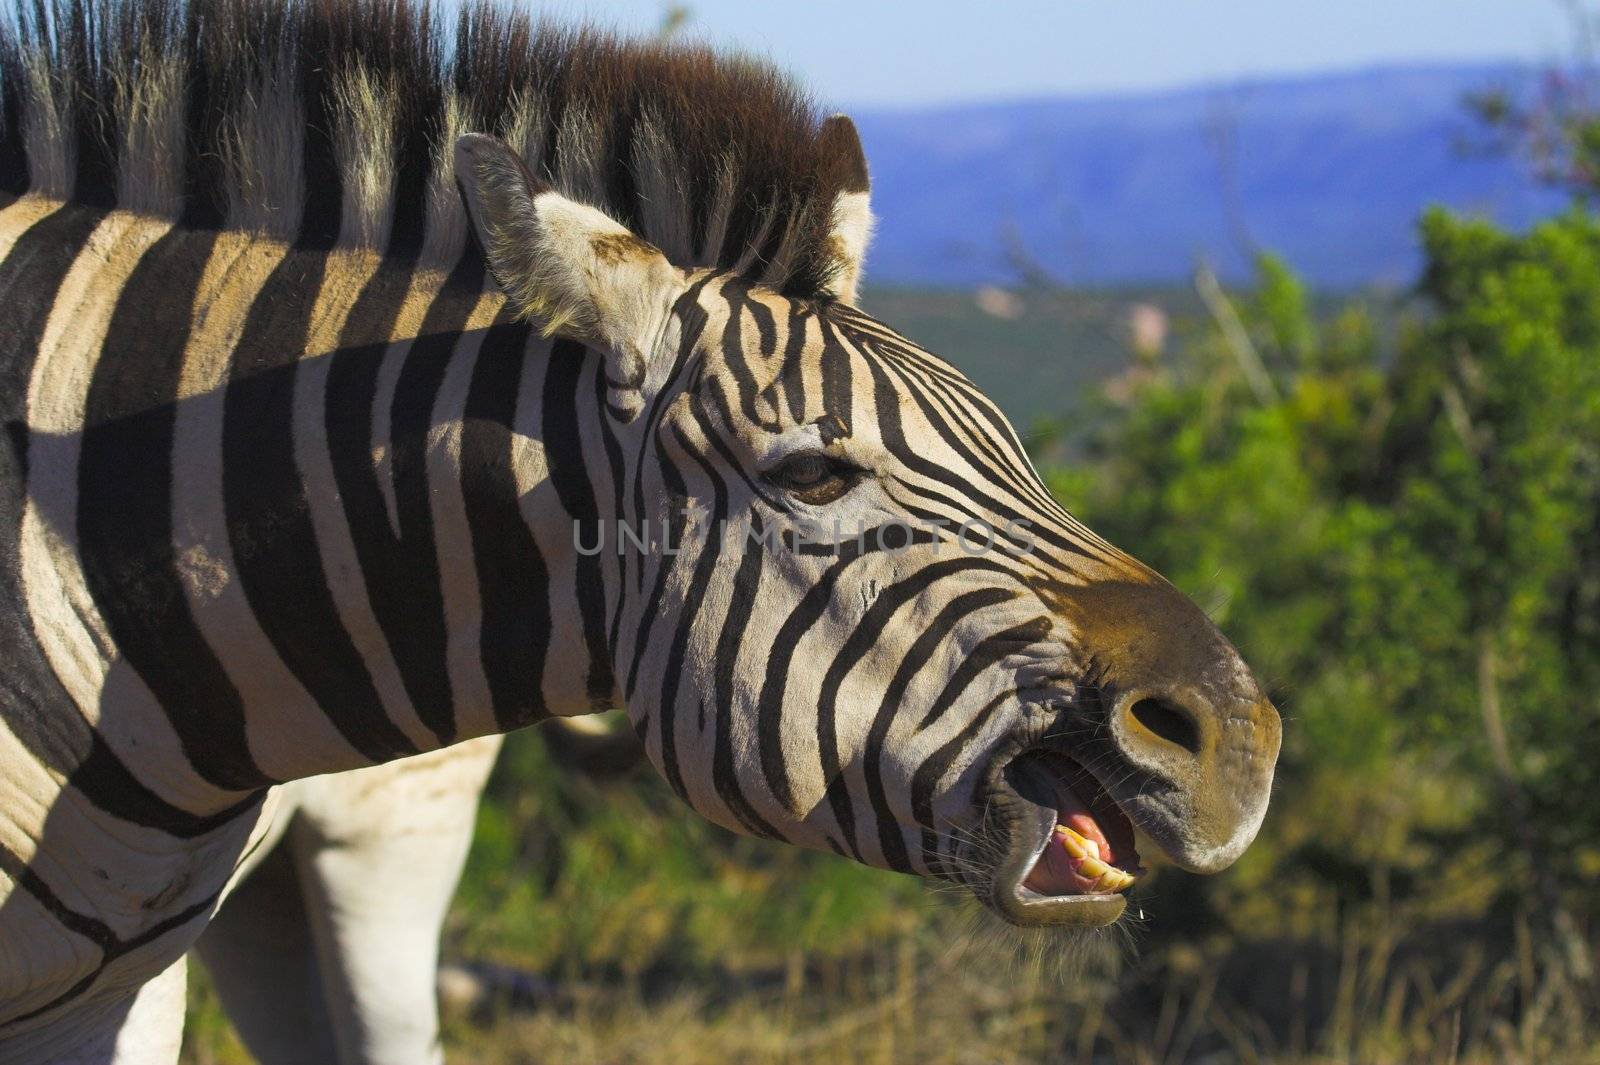 Zebra Teeth by nightowlza